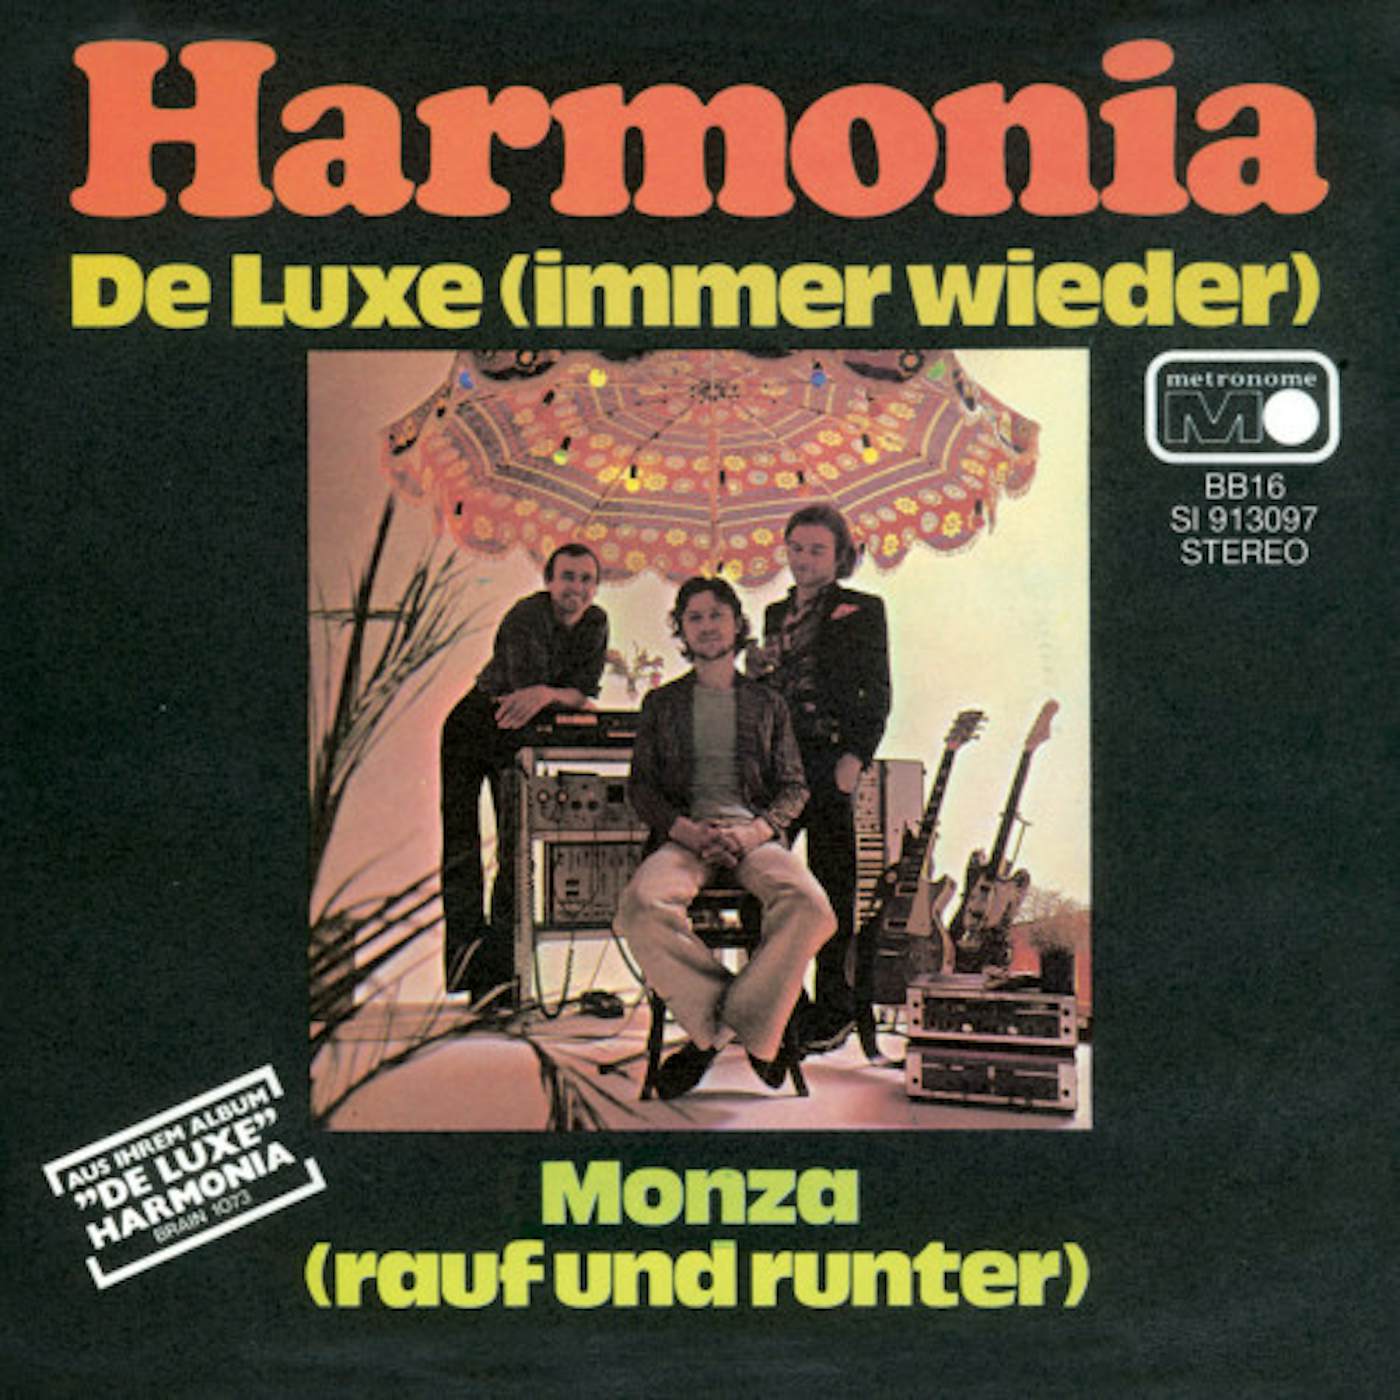 Harmonia DE LUXE (IMMER WIEDER) / MONZA (RAUF UND RUNTER) Vinyl Record